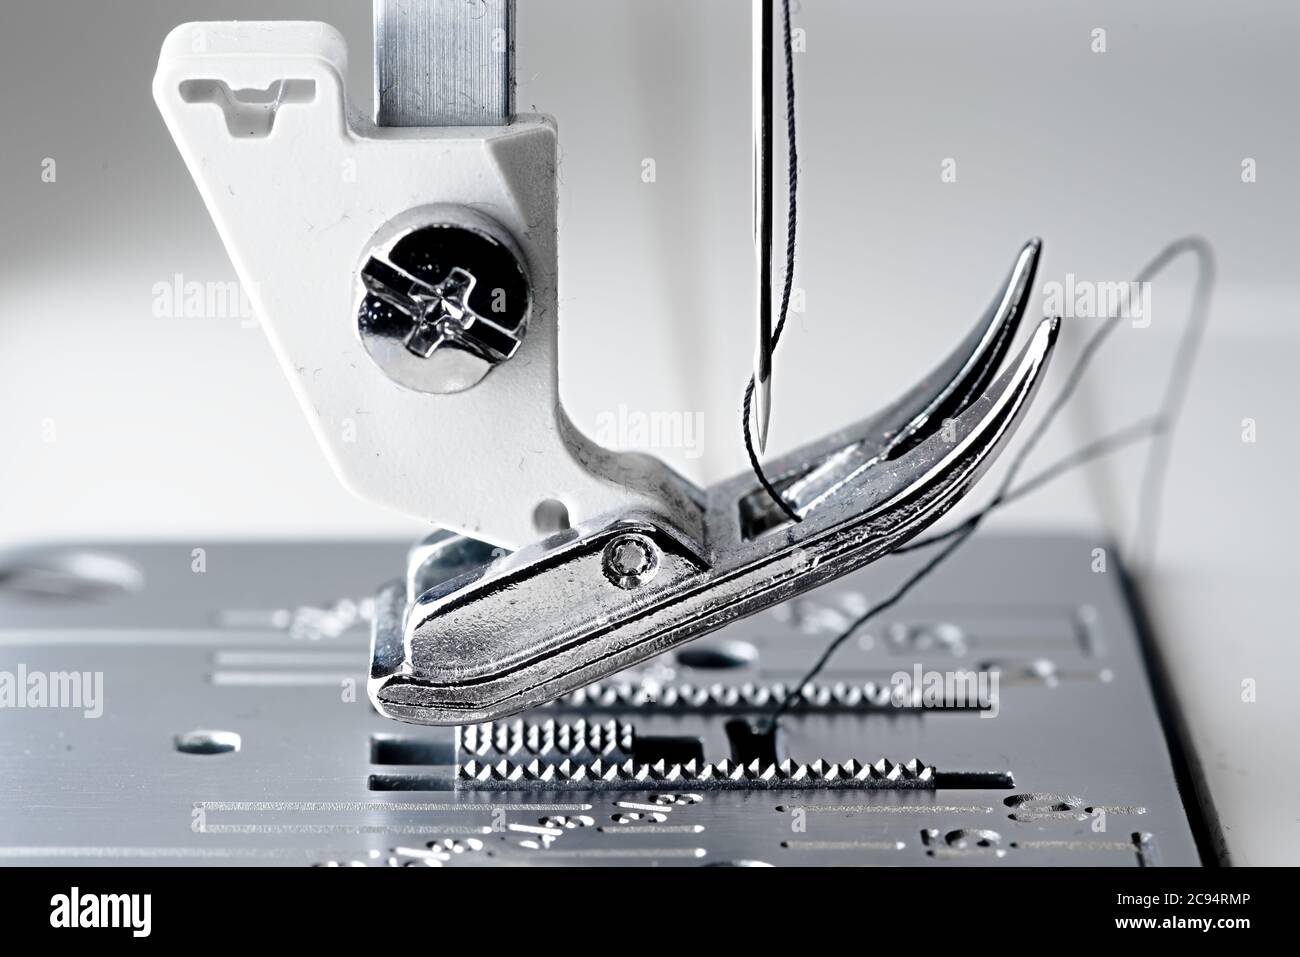 4 - Super Makro-Bild mit selektivem Fokus auf Nadel und Faden. Zeigt den Mechanismus und Arbeitsbereich einer weißen und metallenen Nähmaschine. Stockfoto